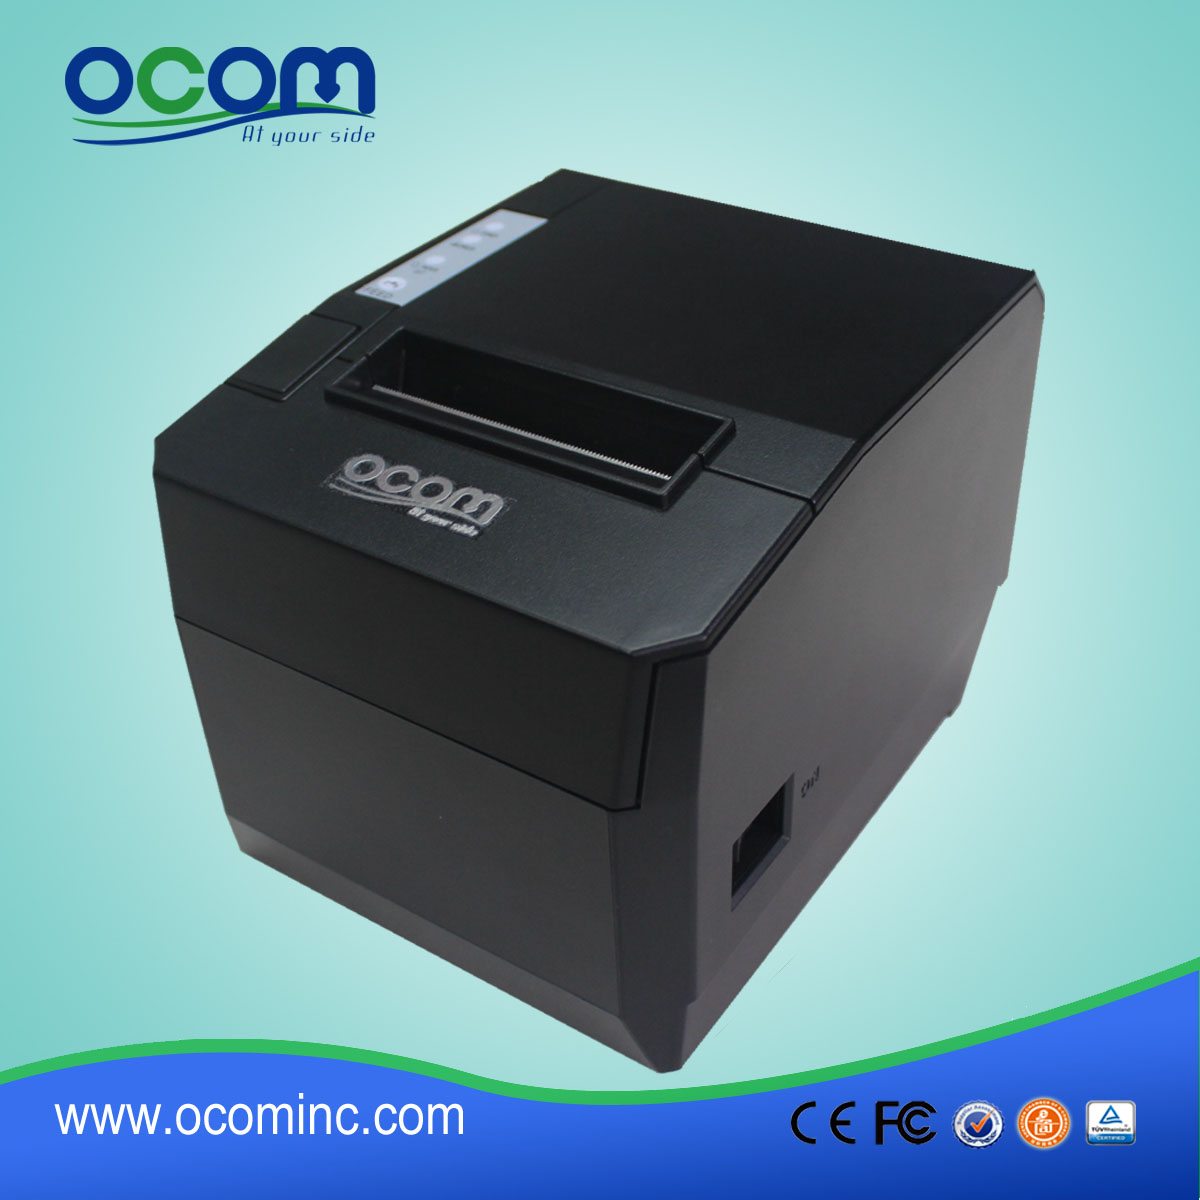 OCPP-88 a Epson 80mm file d’attente ticket thermique imprimante Compatible avec unité de découpage automatique